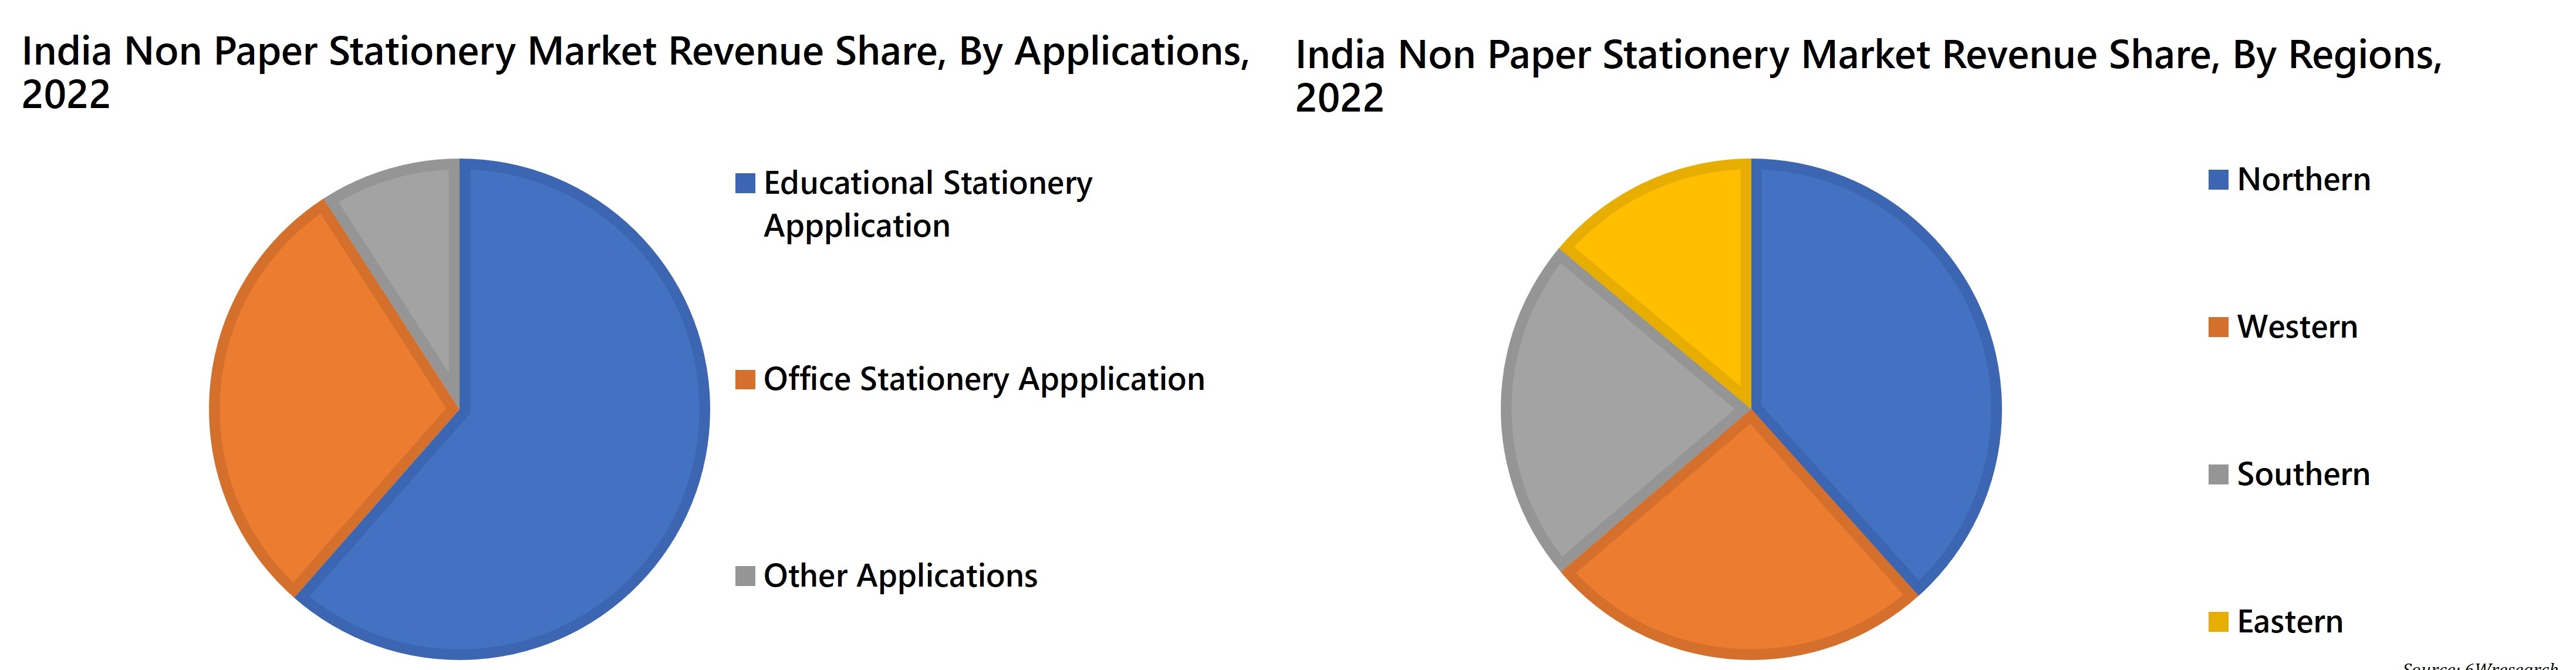 India Non Paper Stationery Market Revenue Share